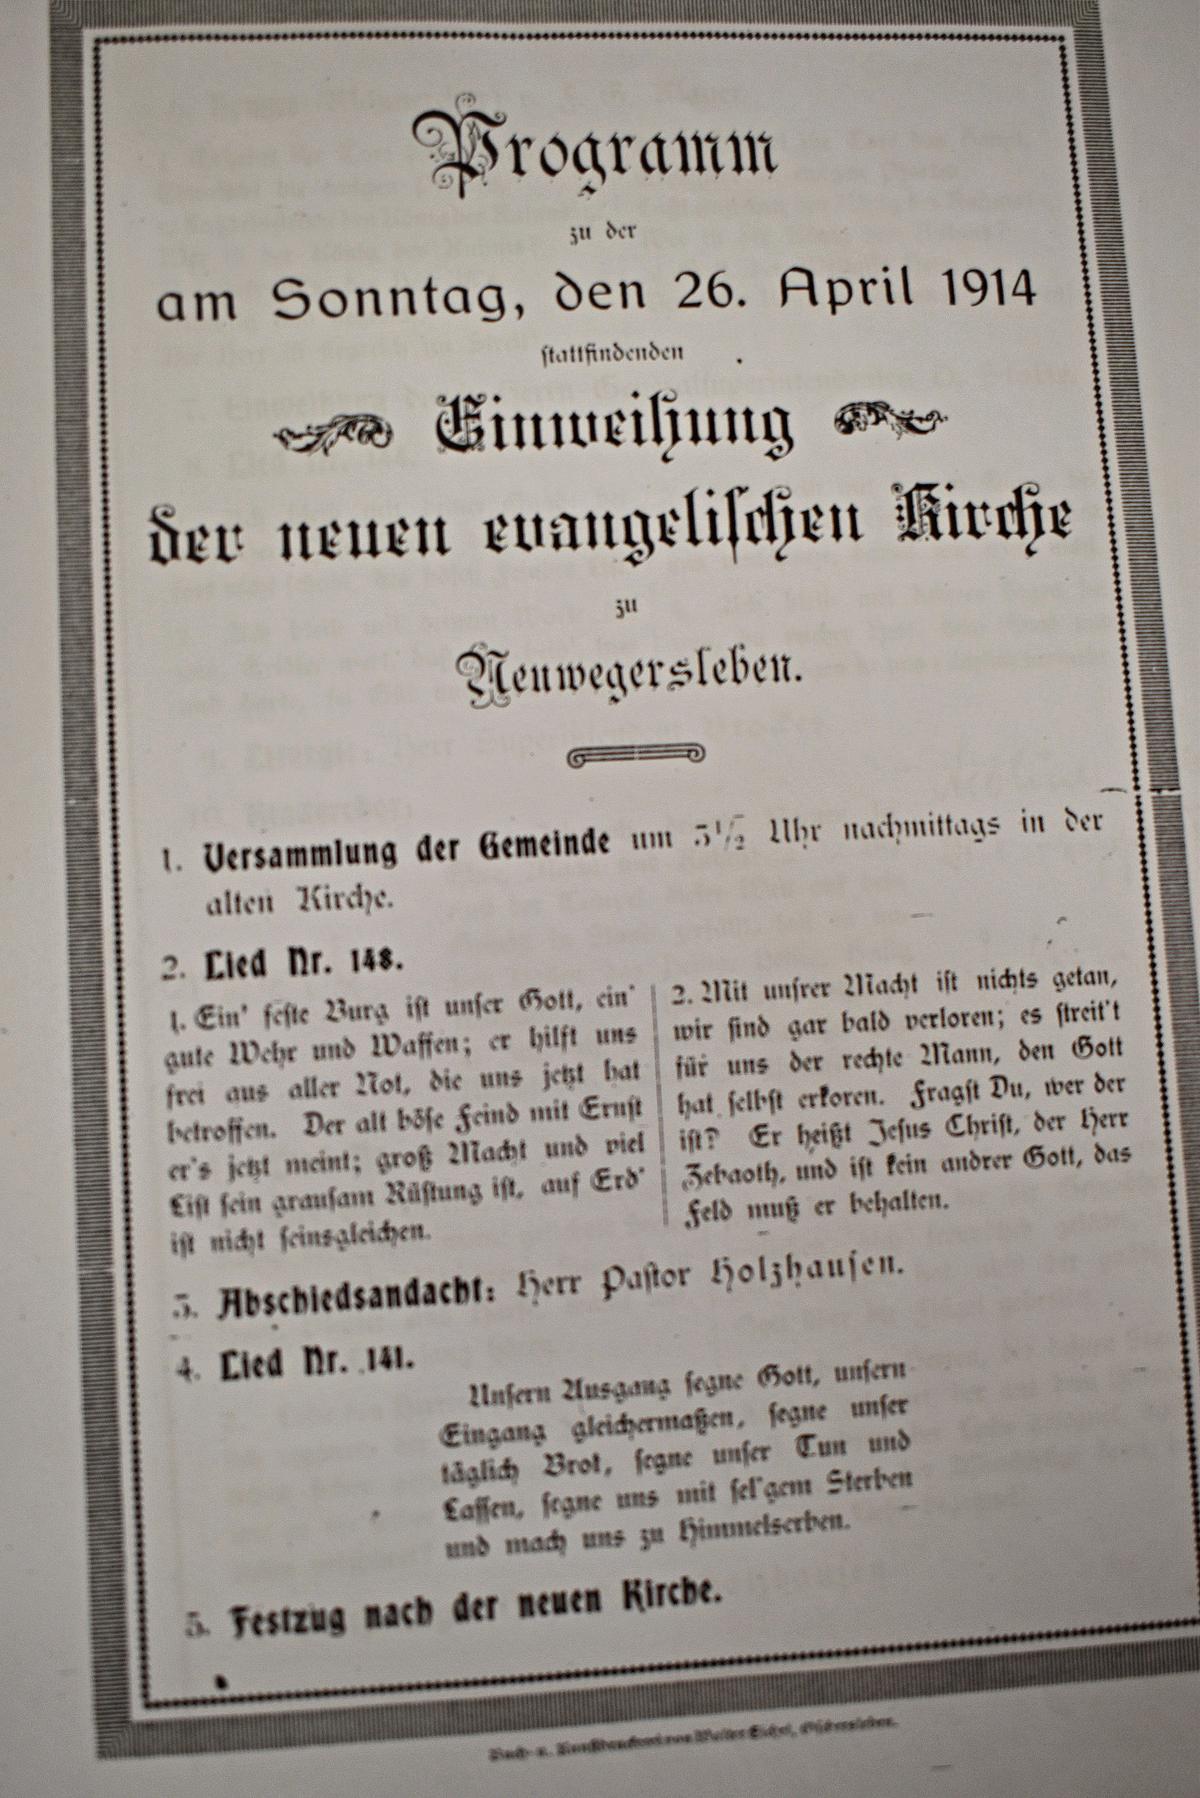 Am 26. April 1914 ist die Neuwegersleber evangelische Kirche eingeweiht worden. Im Programm dieser Veranstaltung ist der Ablauf ganz genau nachzulesen.